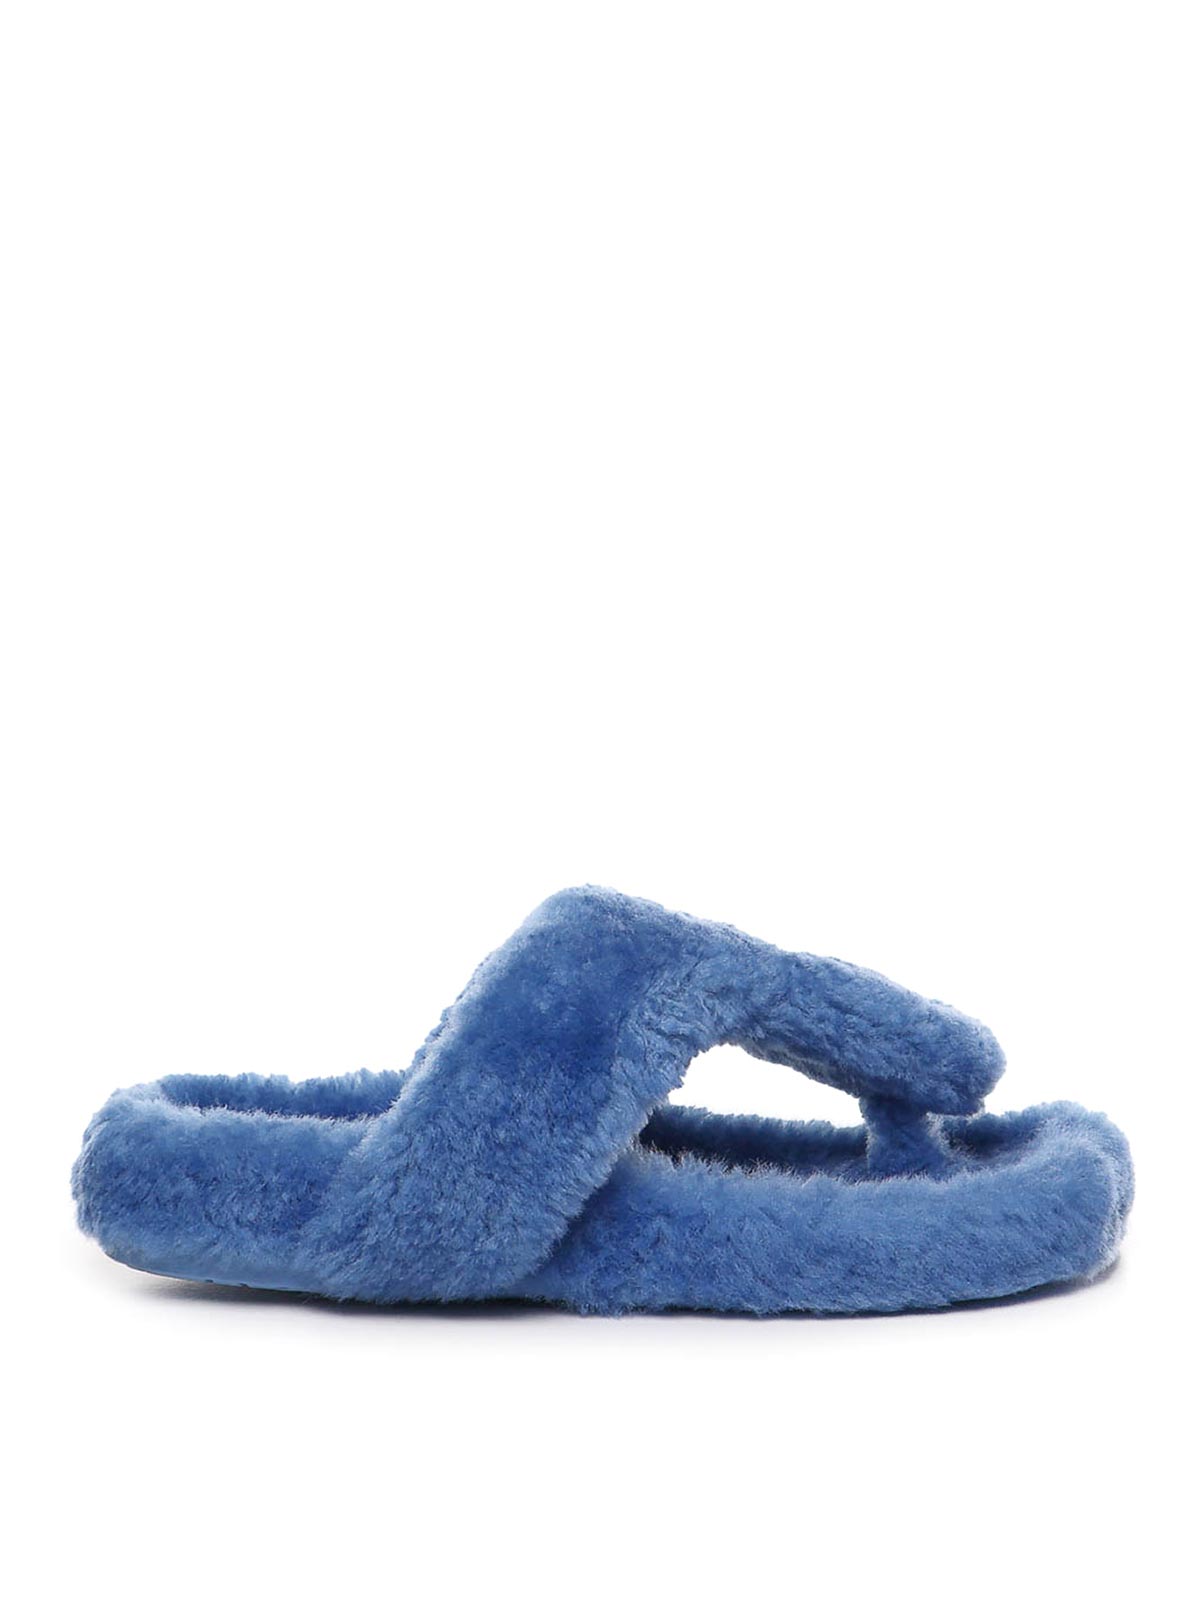 Loewe Sandals In Blue